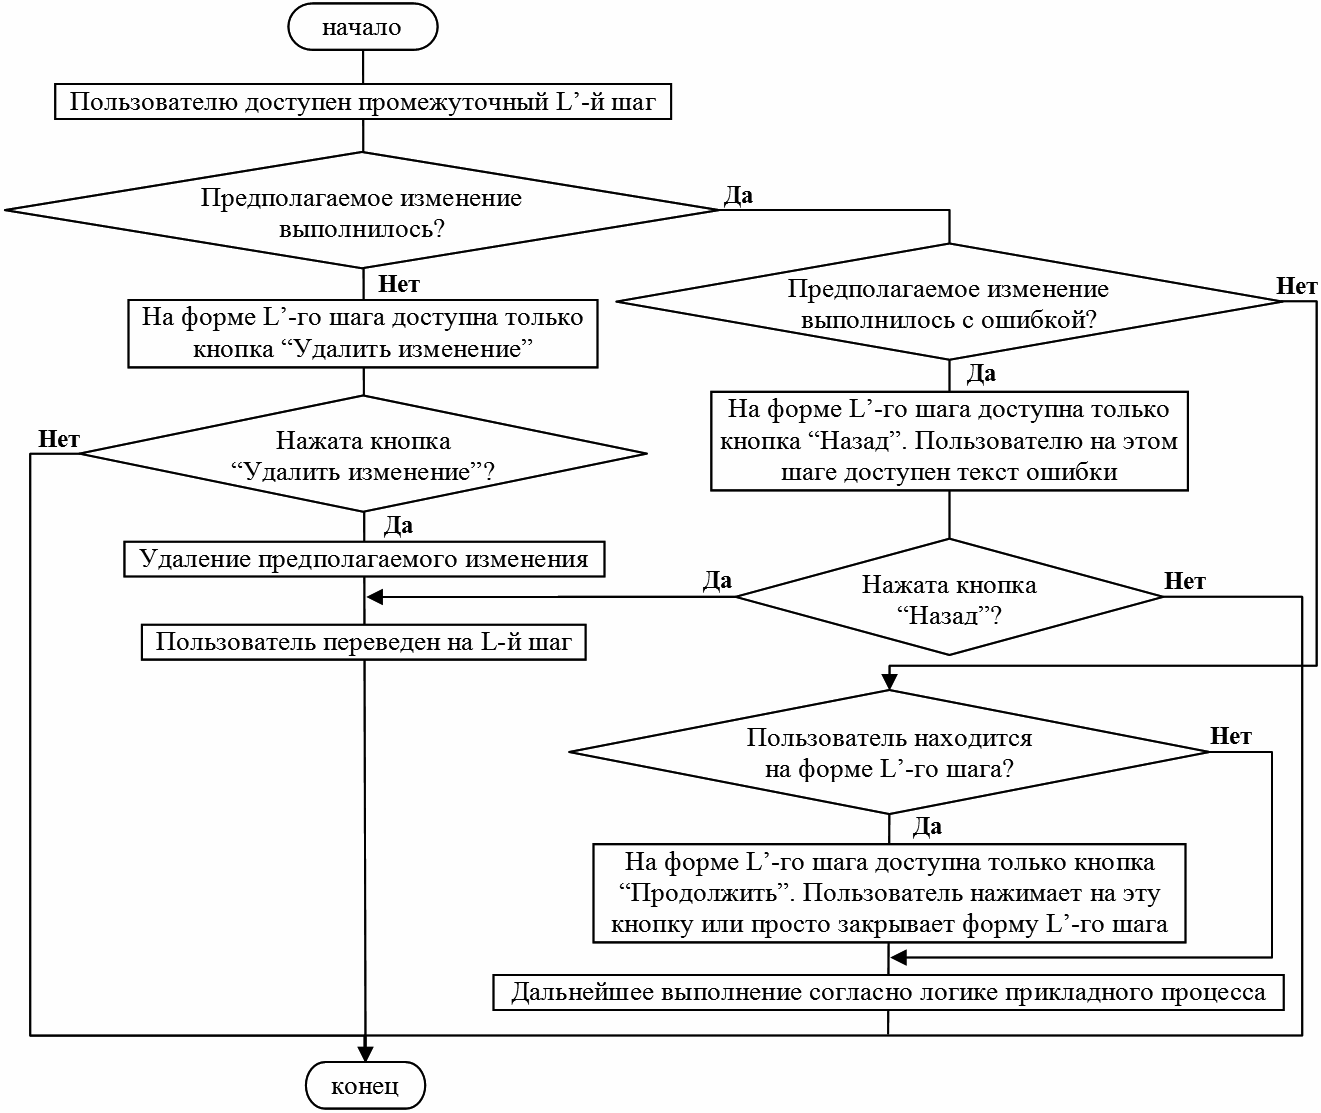 Рисунок 4. Алгоритм поведения пользователя на промежуточном шаге для ВКИСЭО